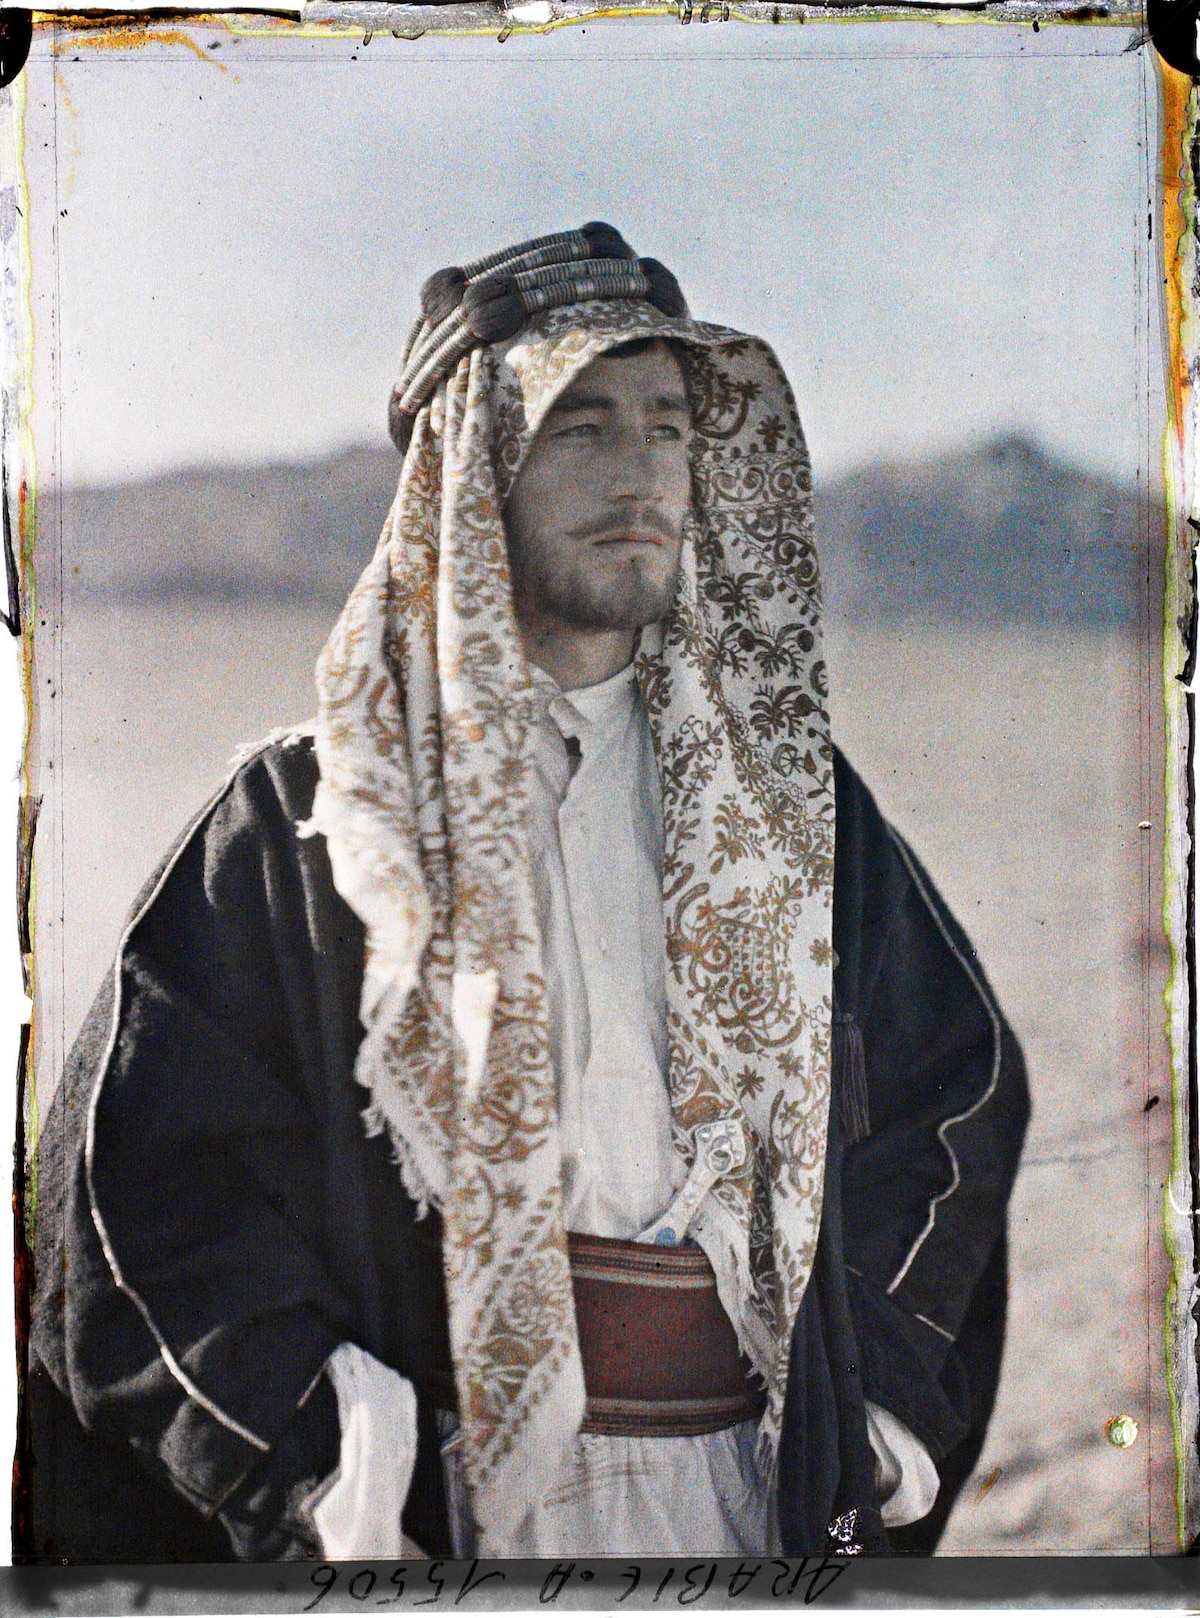 Fayz Bey el Azm, a companion of Emir Faisal